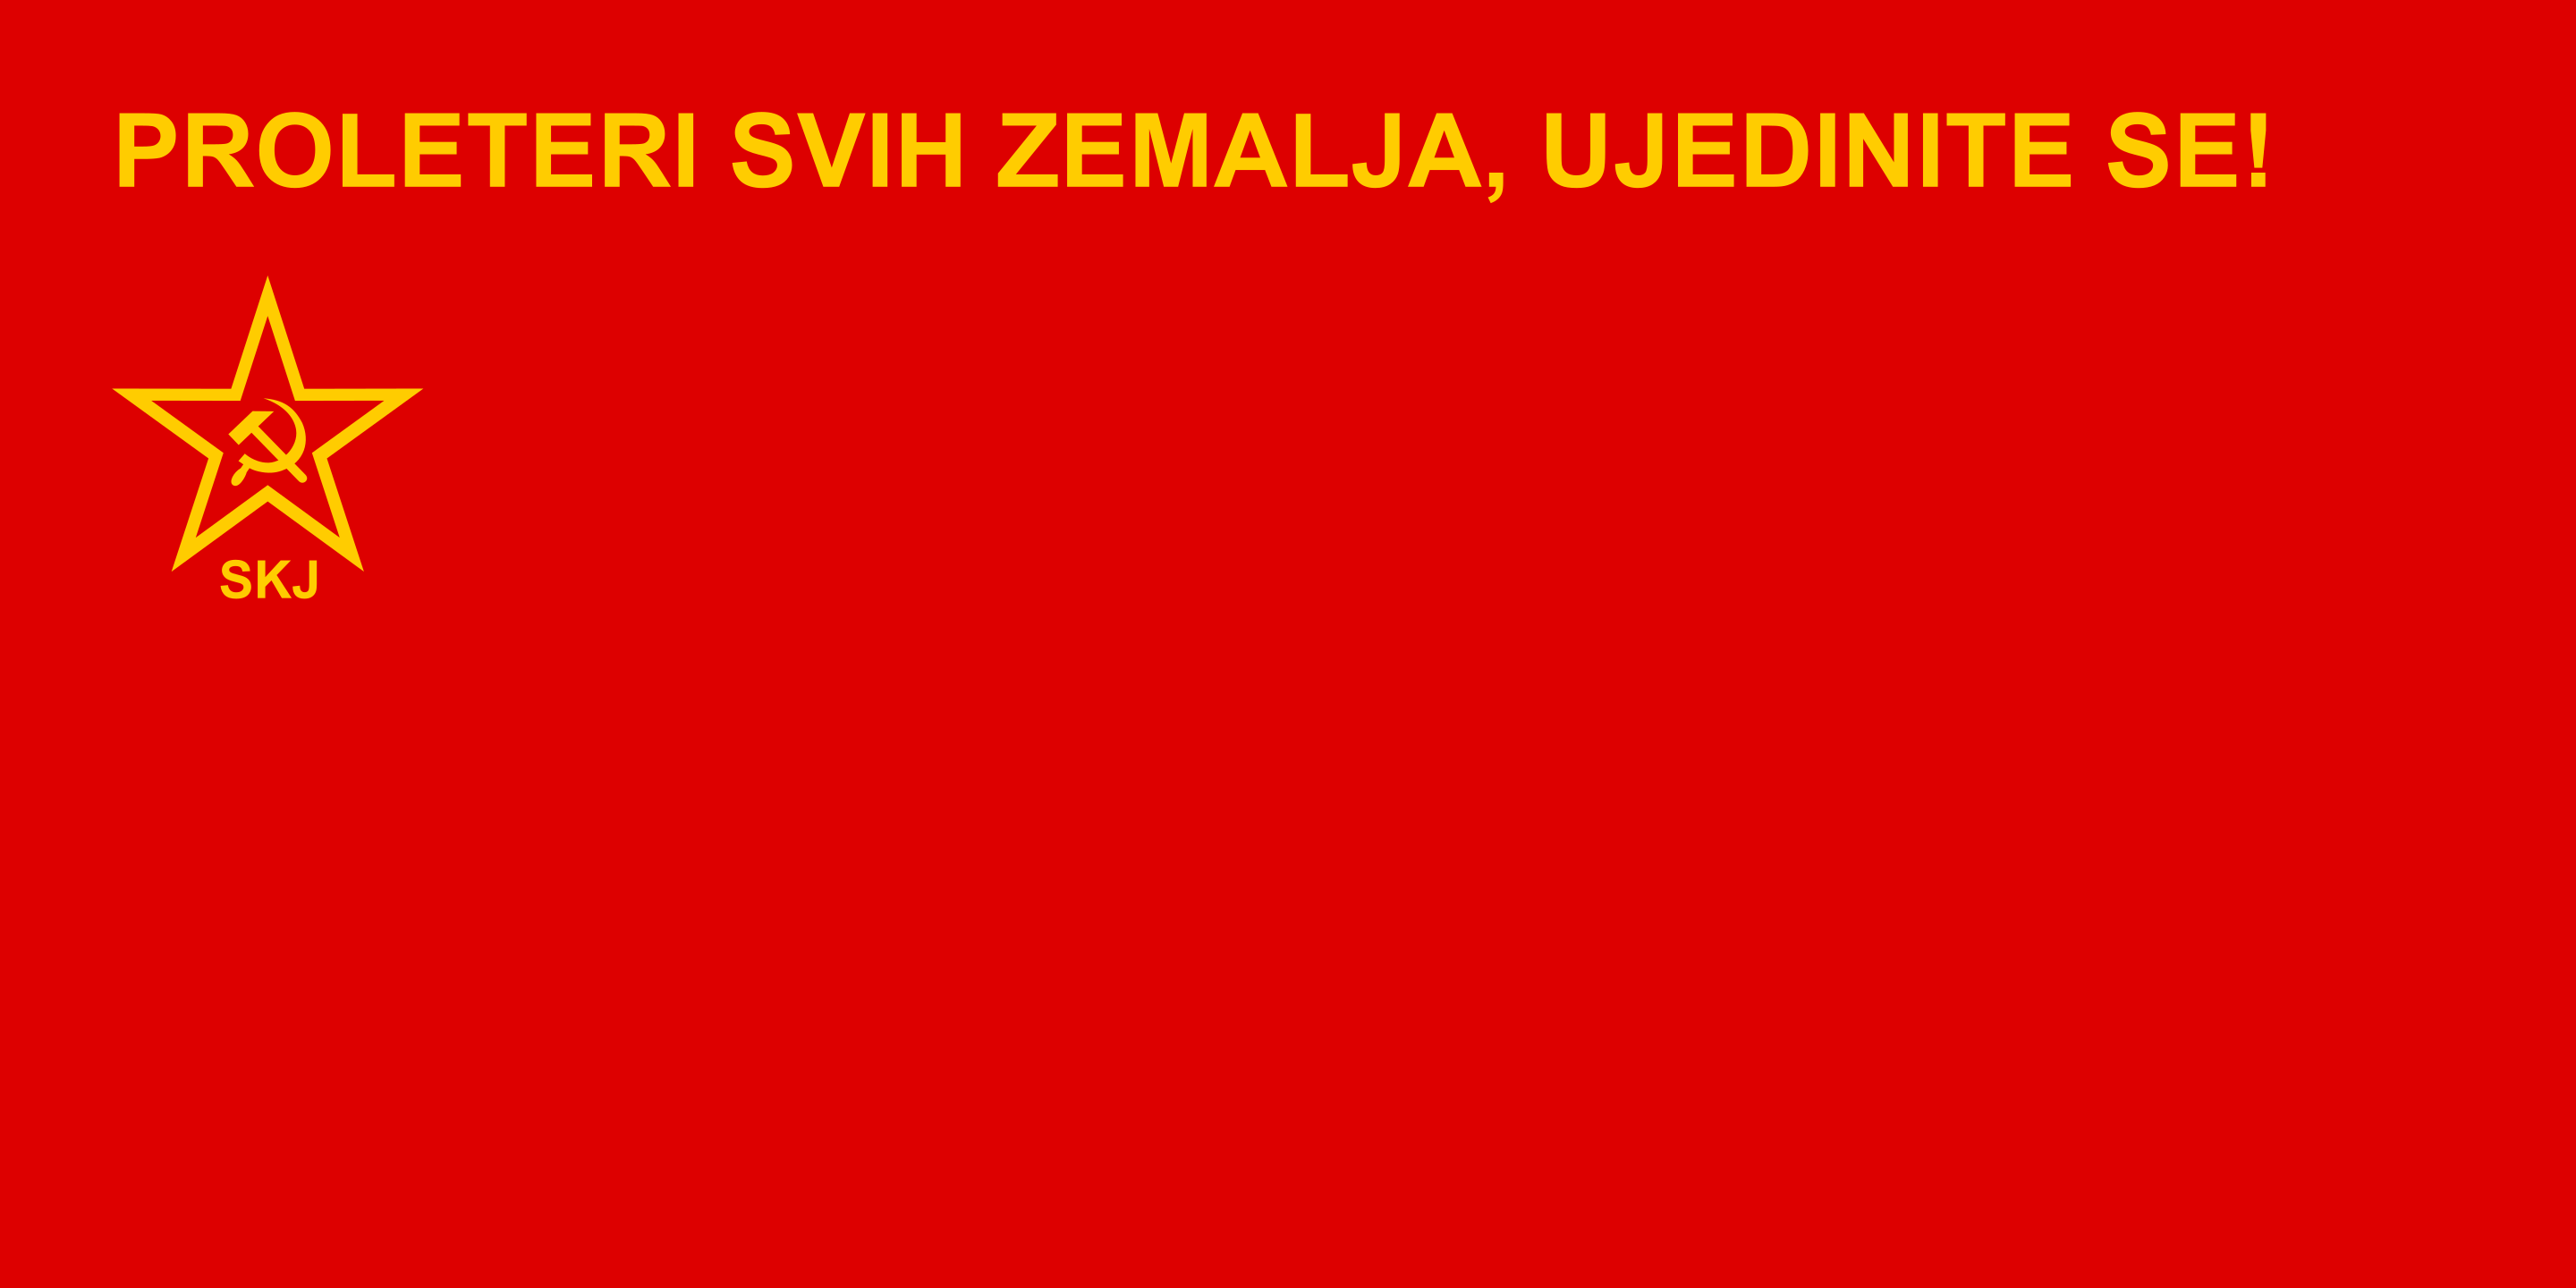 南斯拉夫共產主義者聯盟